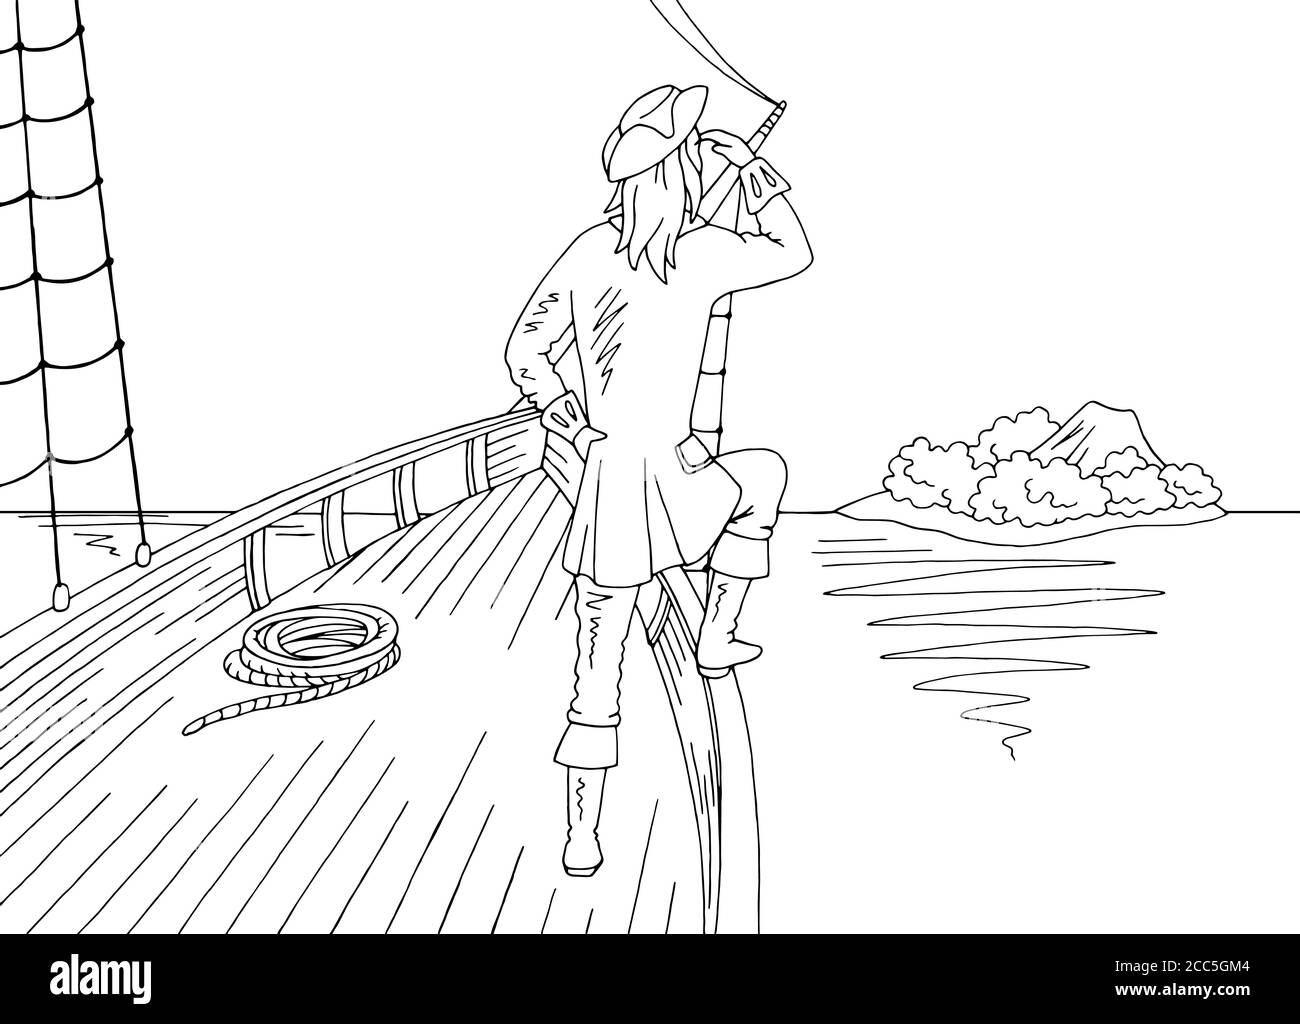 Seemann steht auf dem Bug des Schiffes und schaut Auf der Insel Grafik schwarz weiß Landschaft Skizze Illustration Vektor Stock Vektor